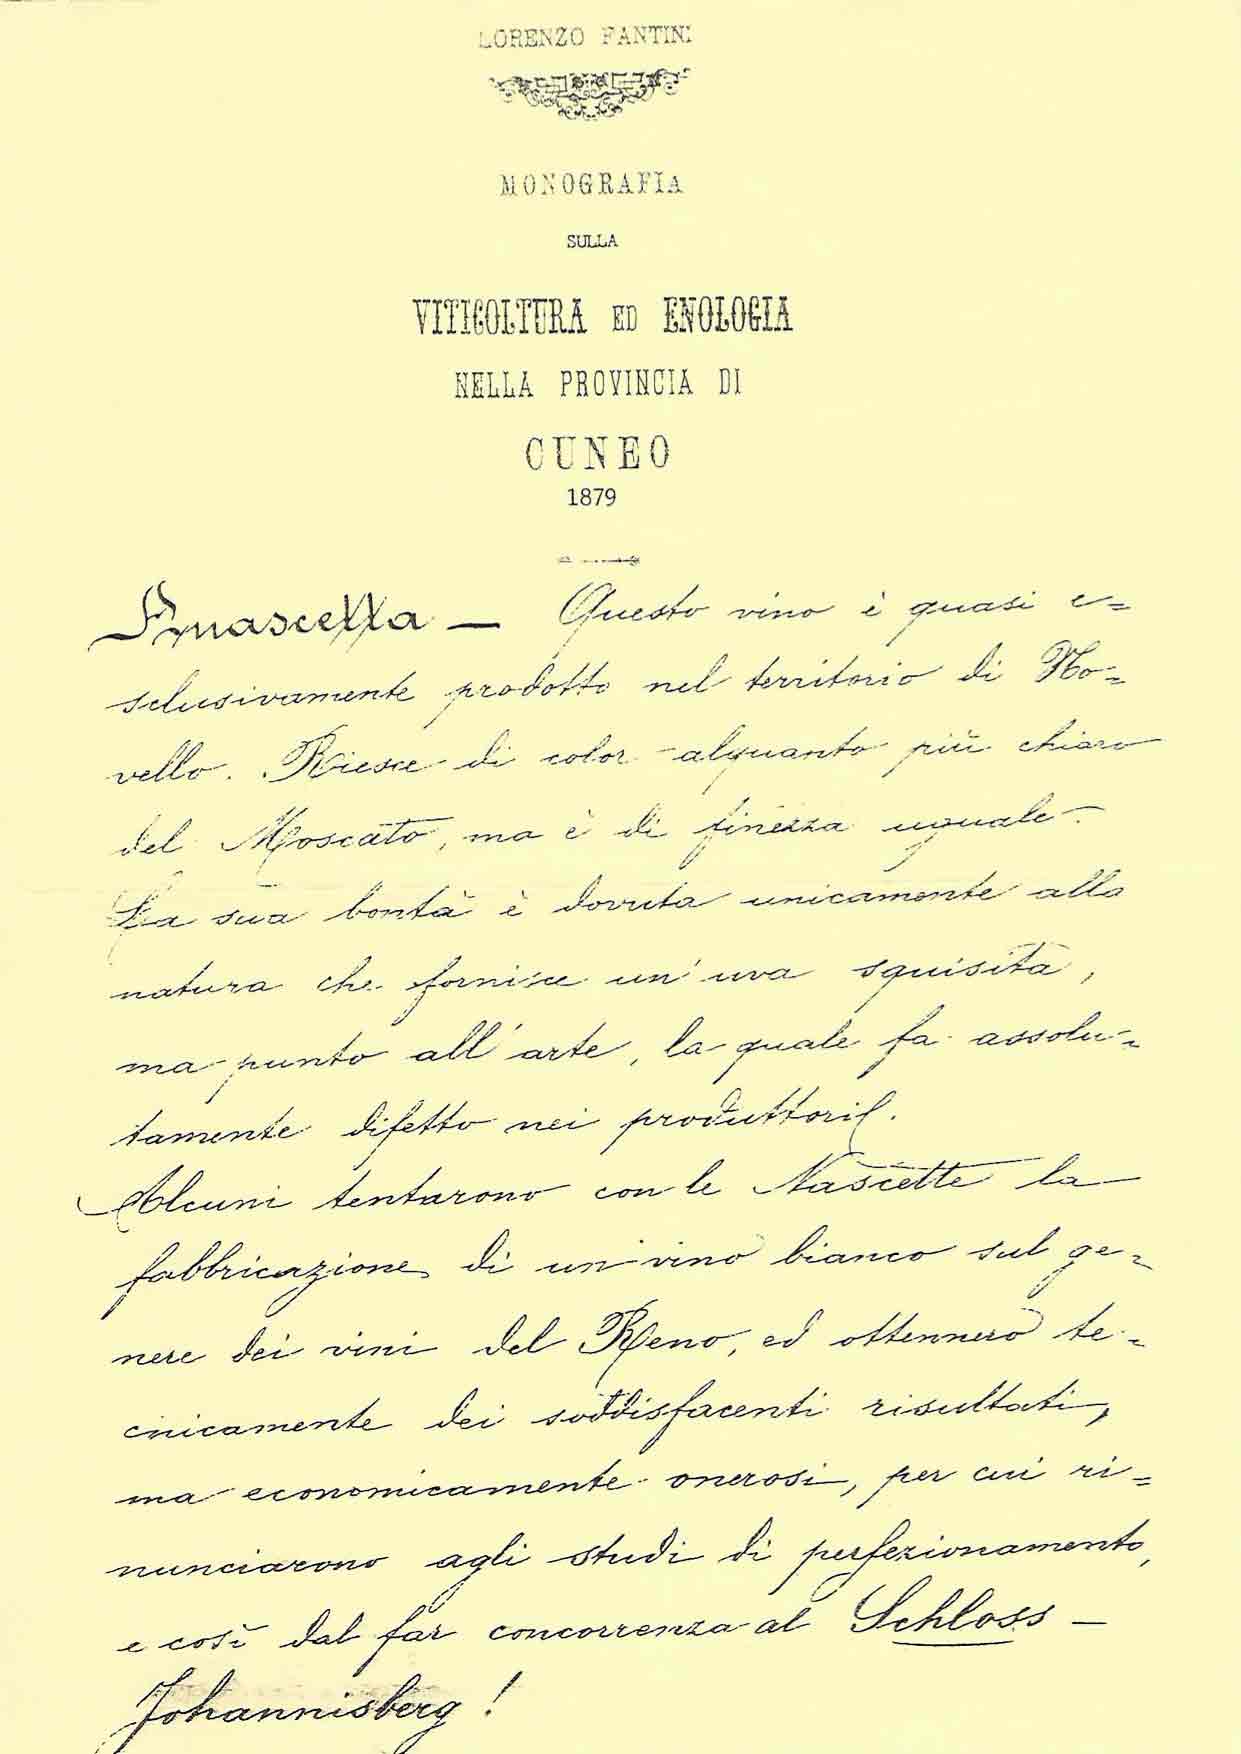 Lorenzo-Fantini-Monografia-sulla-Viticoltura-nella-Provincia-di-Cuneo-1879